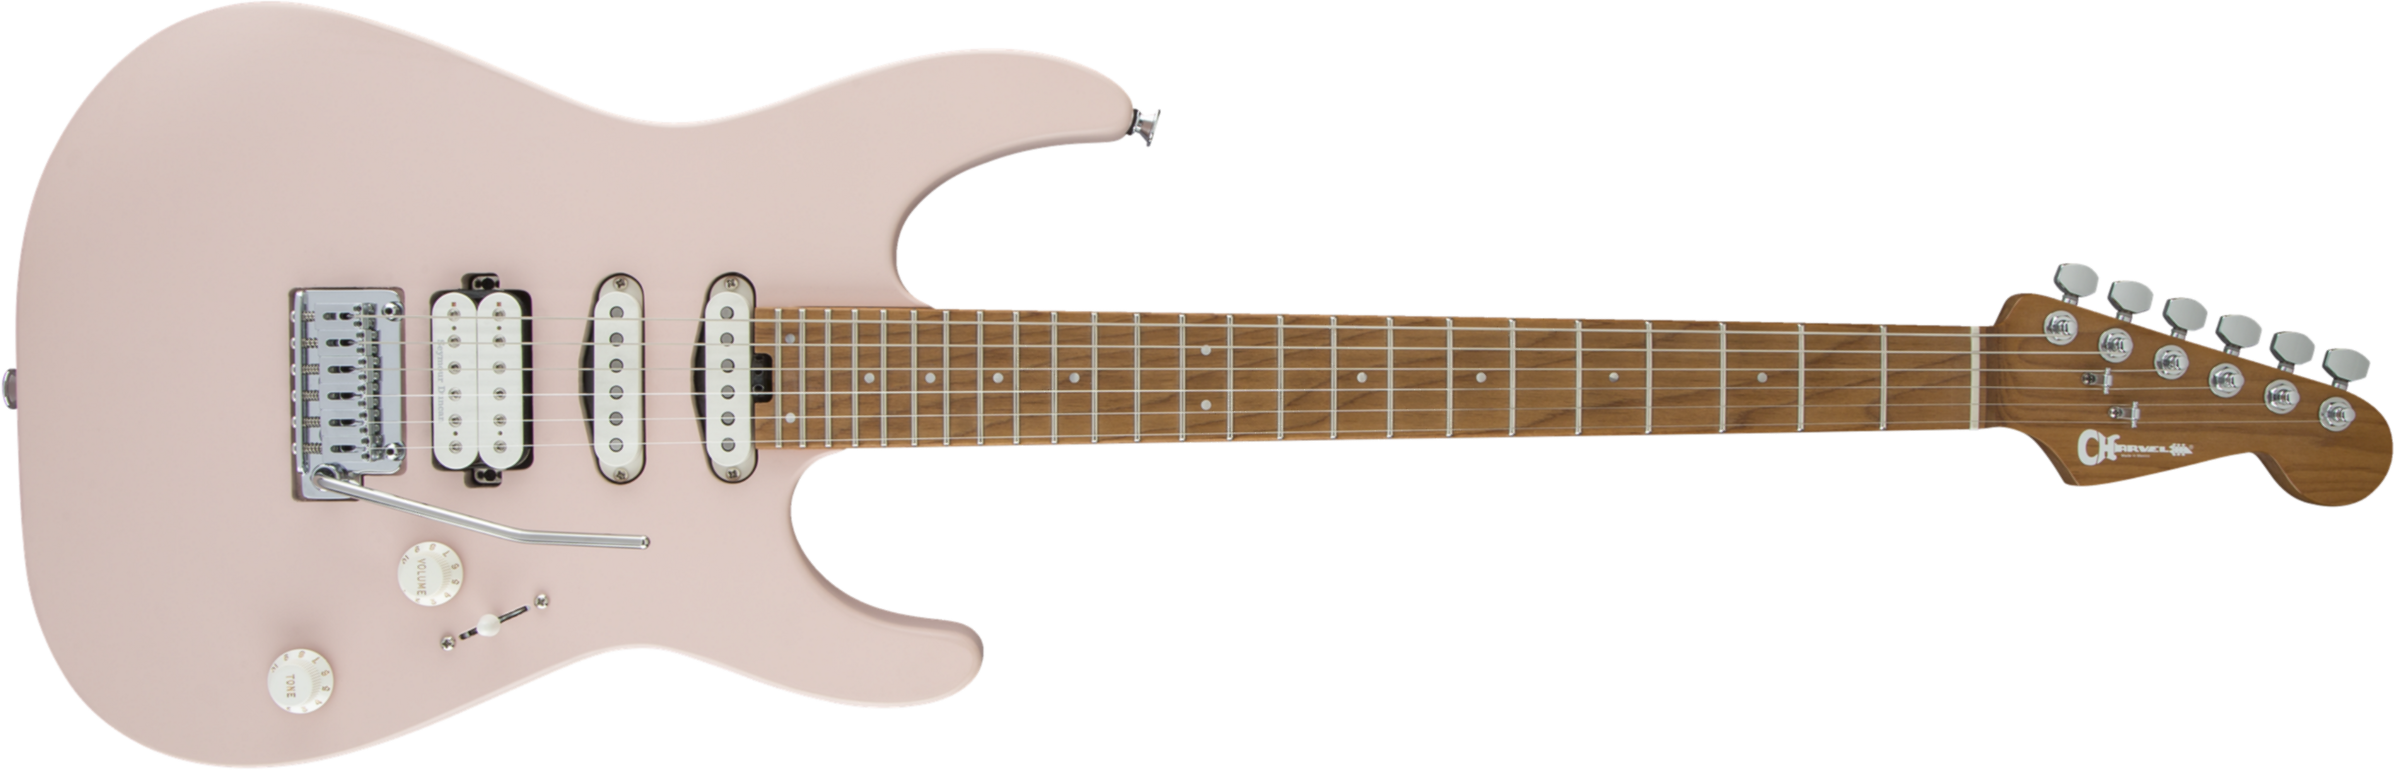 Charvel Pro-mod Dk24 Hss 2pt Cm Trem Mn - Satin Shell Pink - Guitare Électrique Forme Str - Main picture